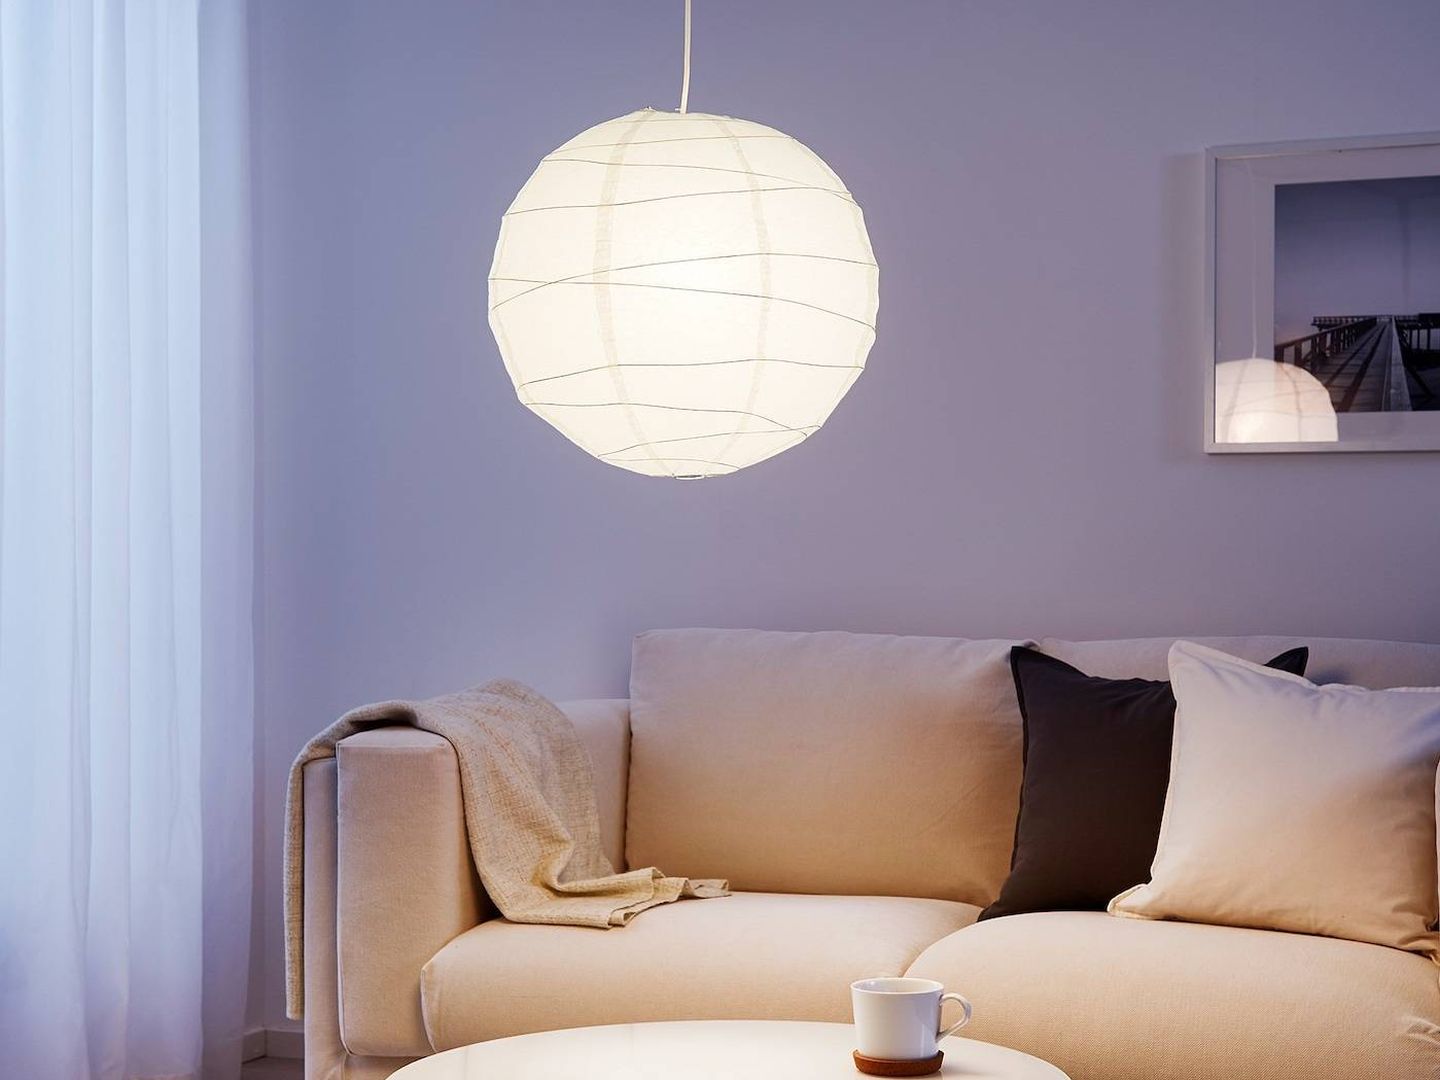 Despierta tu imaginación con esta lámpara de Ikea. (Cortesía)